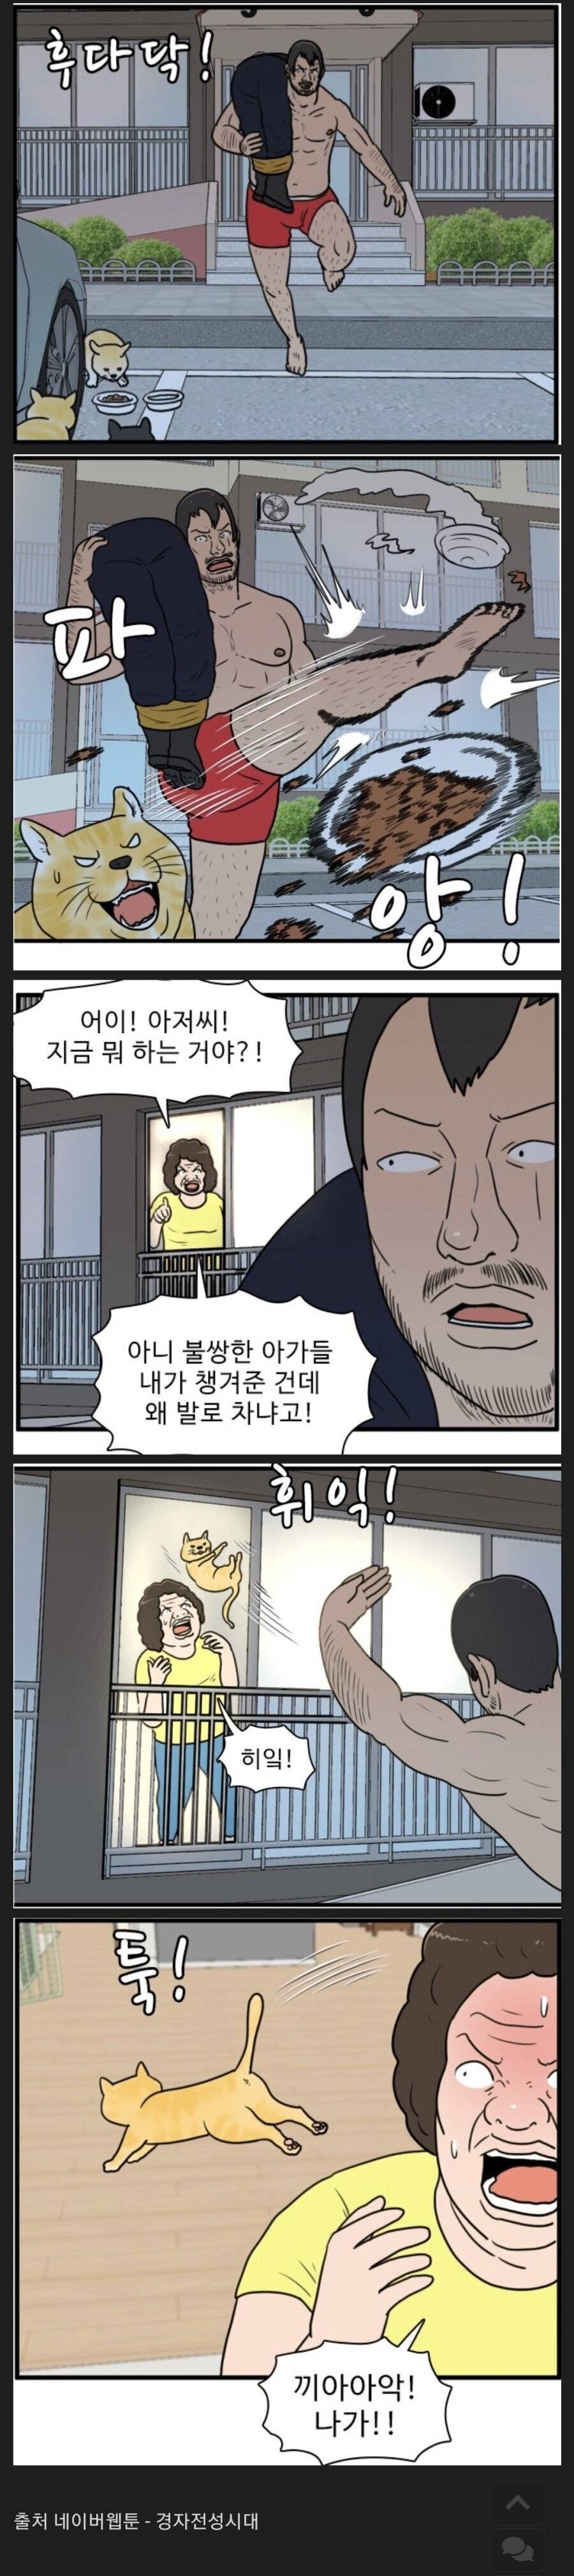 캣맘 카페 영구차단 웹툰 ㅋㅋ | 인스티즈